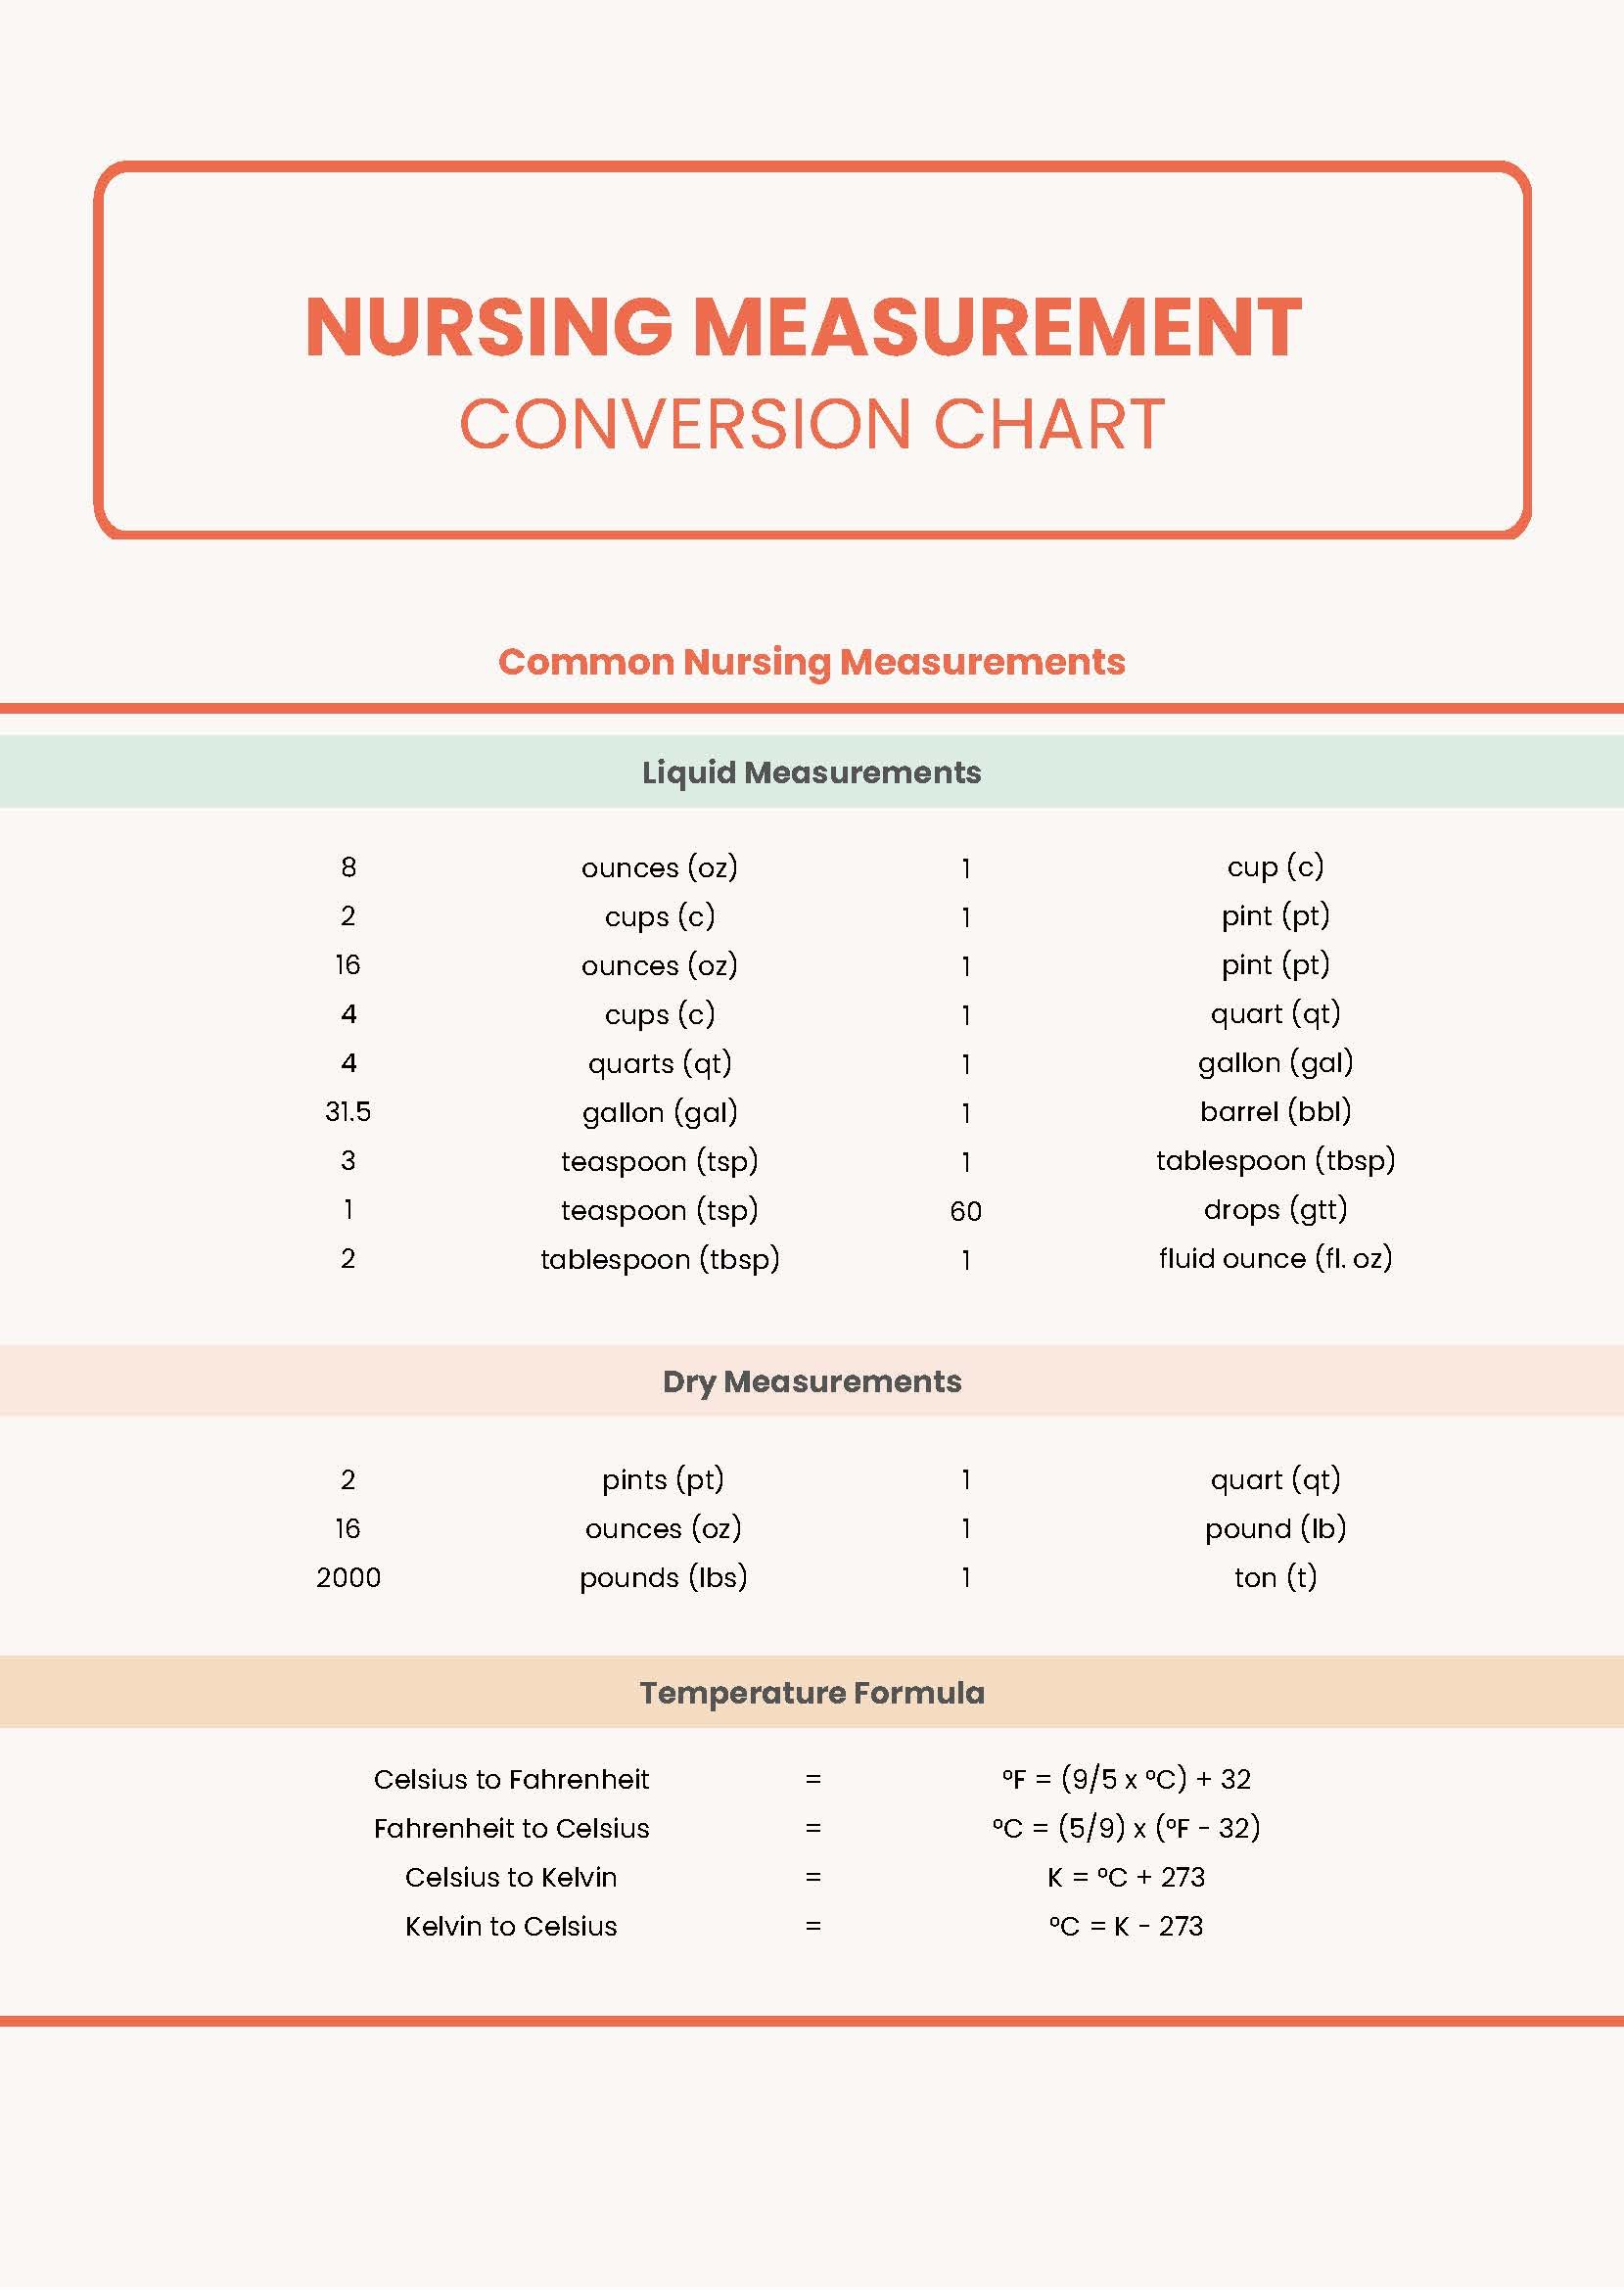 conversion-chart-baking-measurements-nutrition-chart-baking-conversion-chart-annadesignstuff